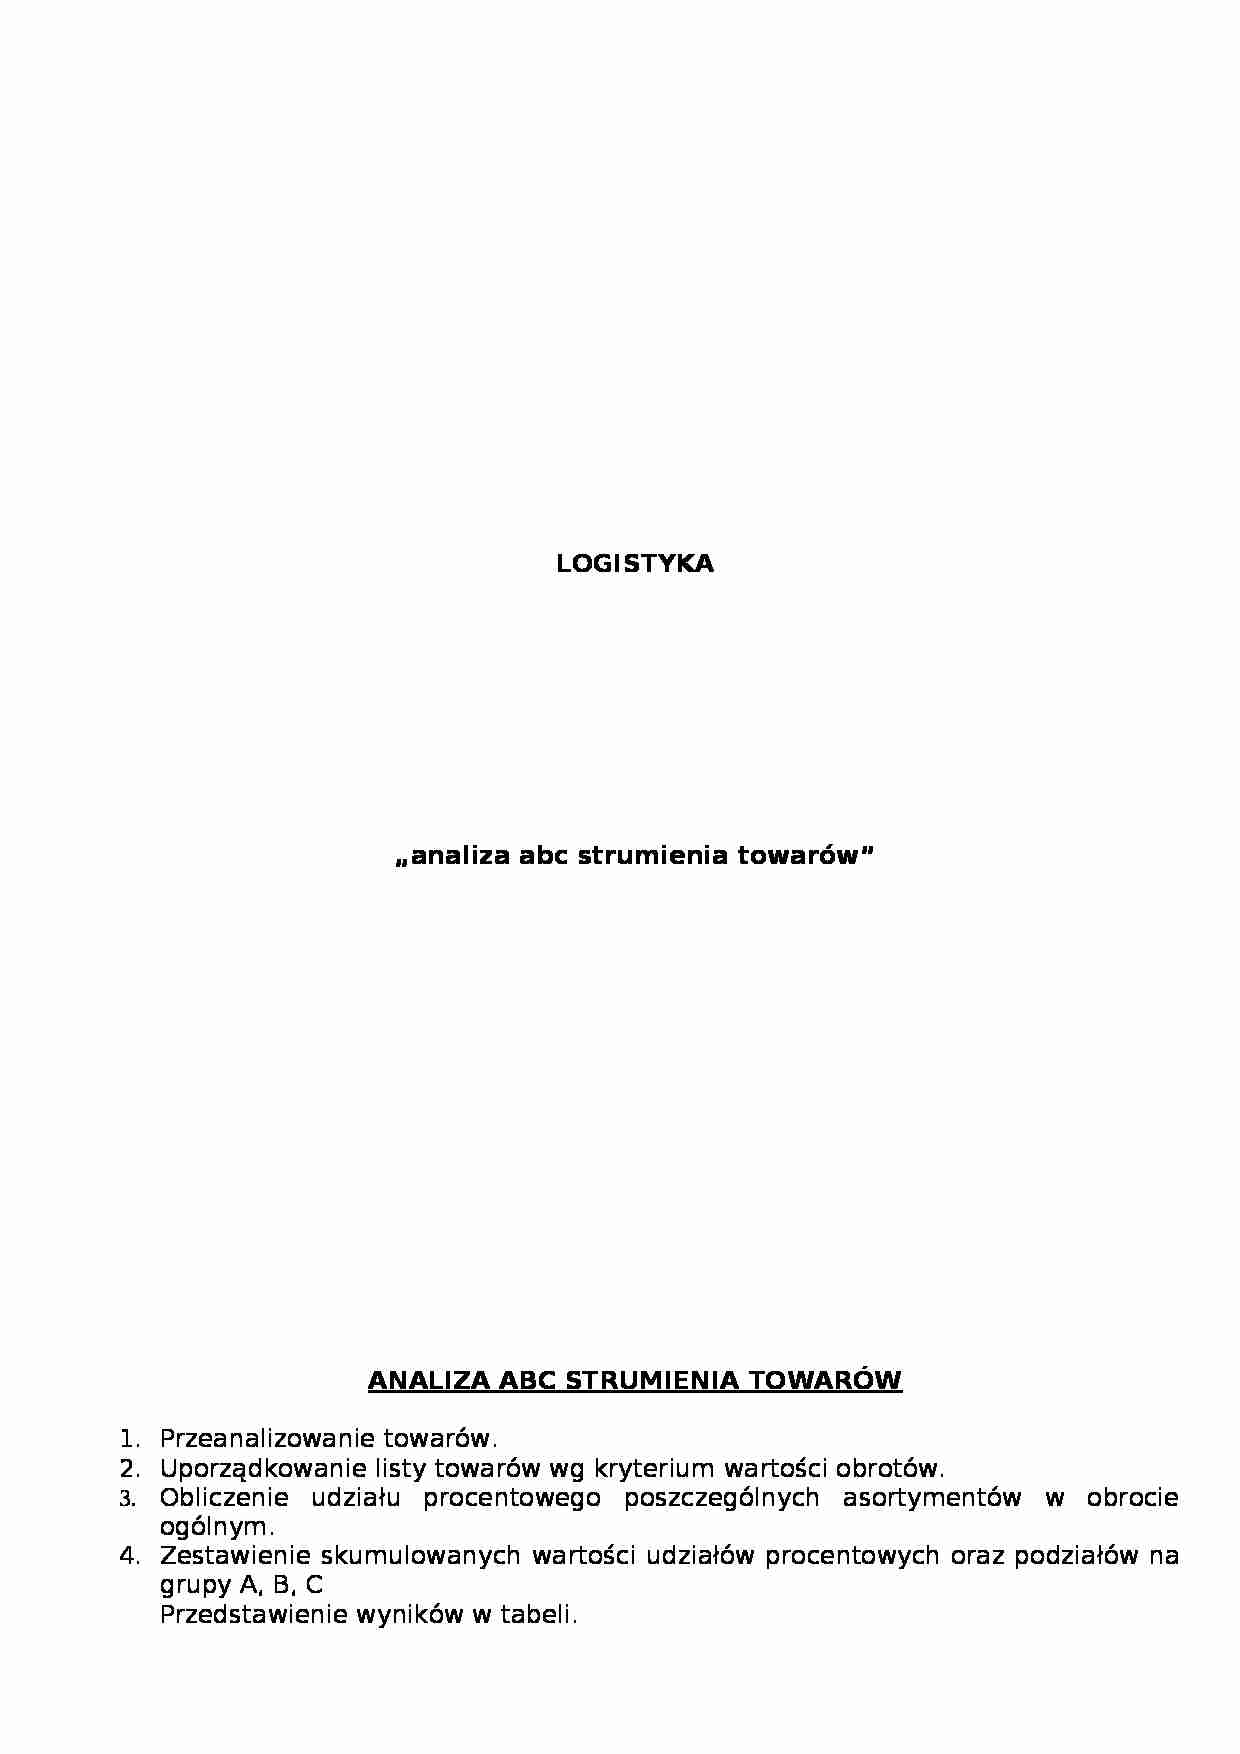 Analiza ABC strumienia towarów - logistyka - strona 1